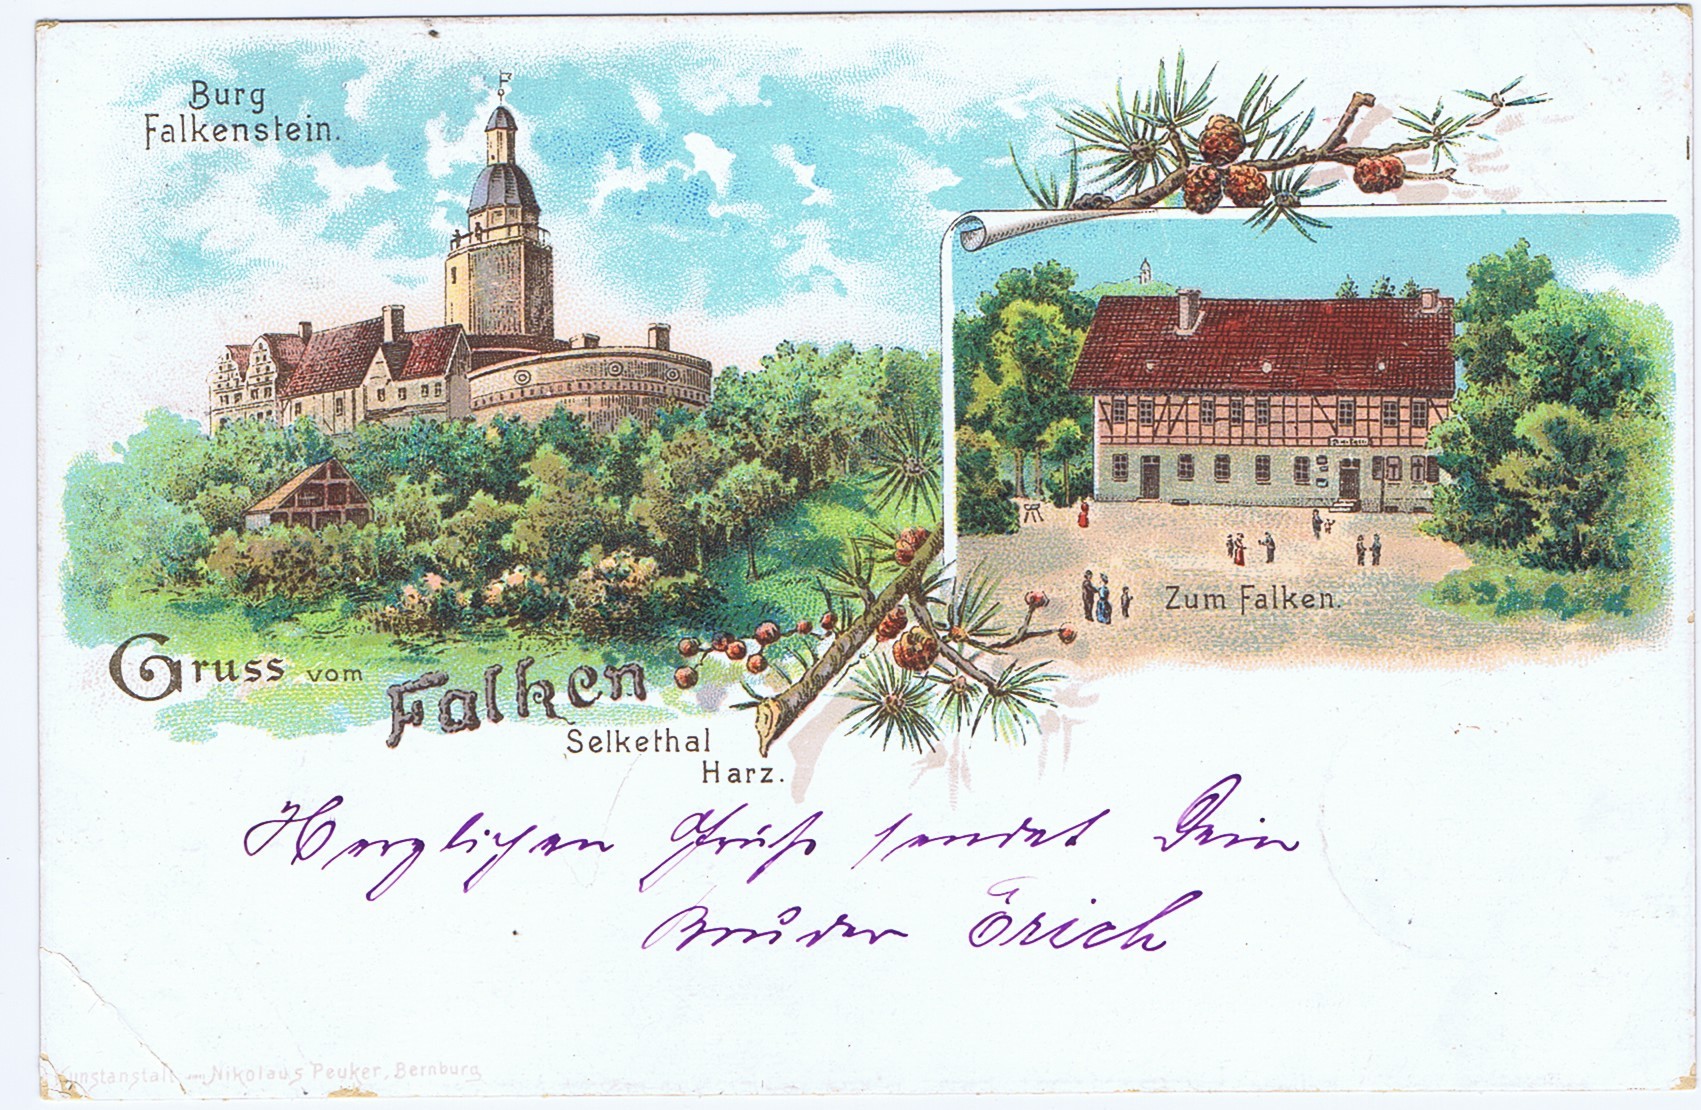 Ansichtskarte: Burg Falkenstein. Zum Falken. (Kulturstiftung Sachsen-Anhalt CC BY-NC-SA)